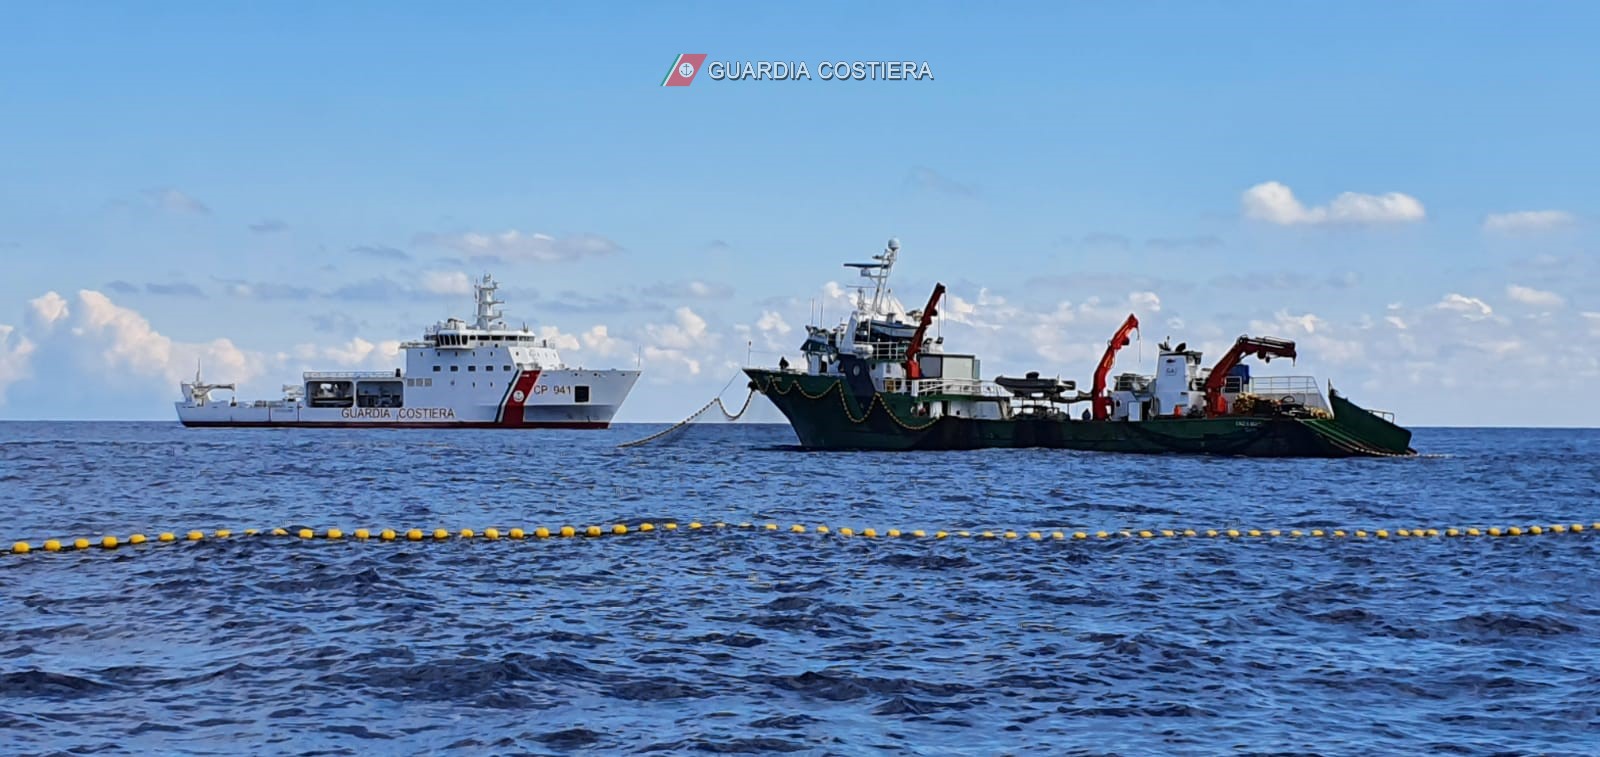 Pesca illegale di tonno rosso, continua la battaglia della Guardia Costiera contro gli illegali – FOTO e VIDEO